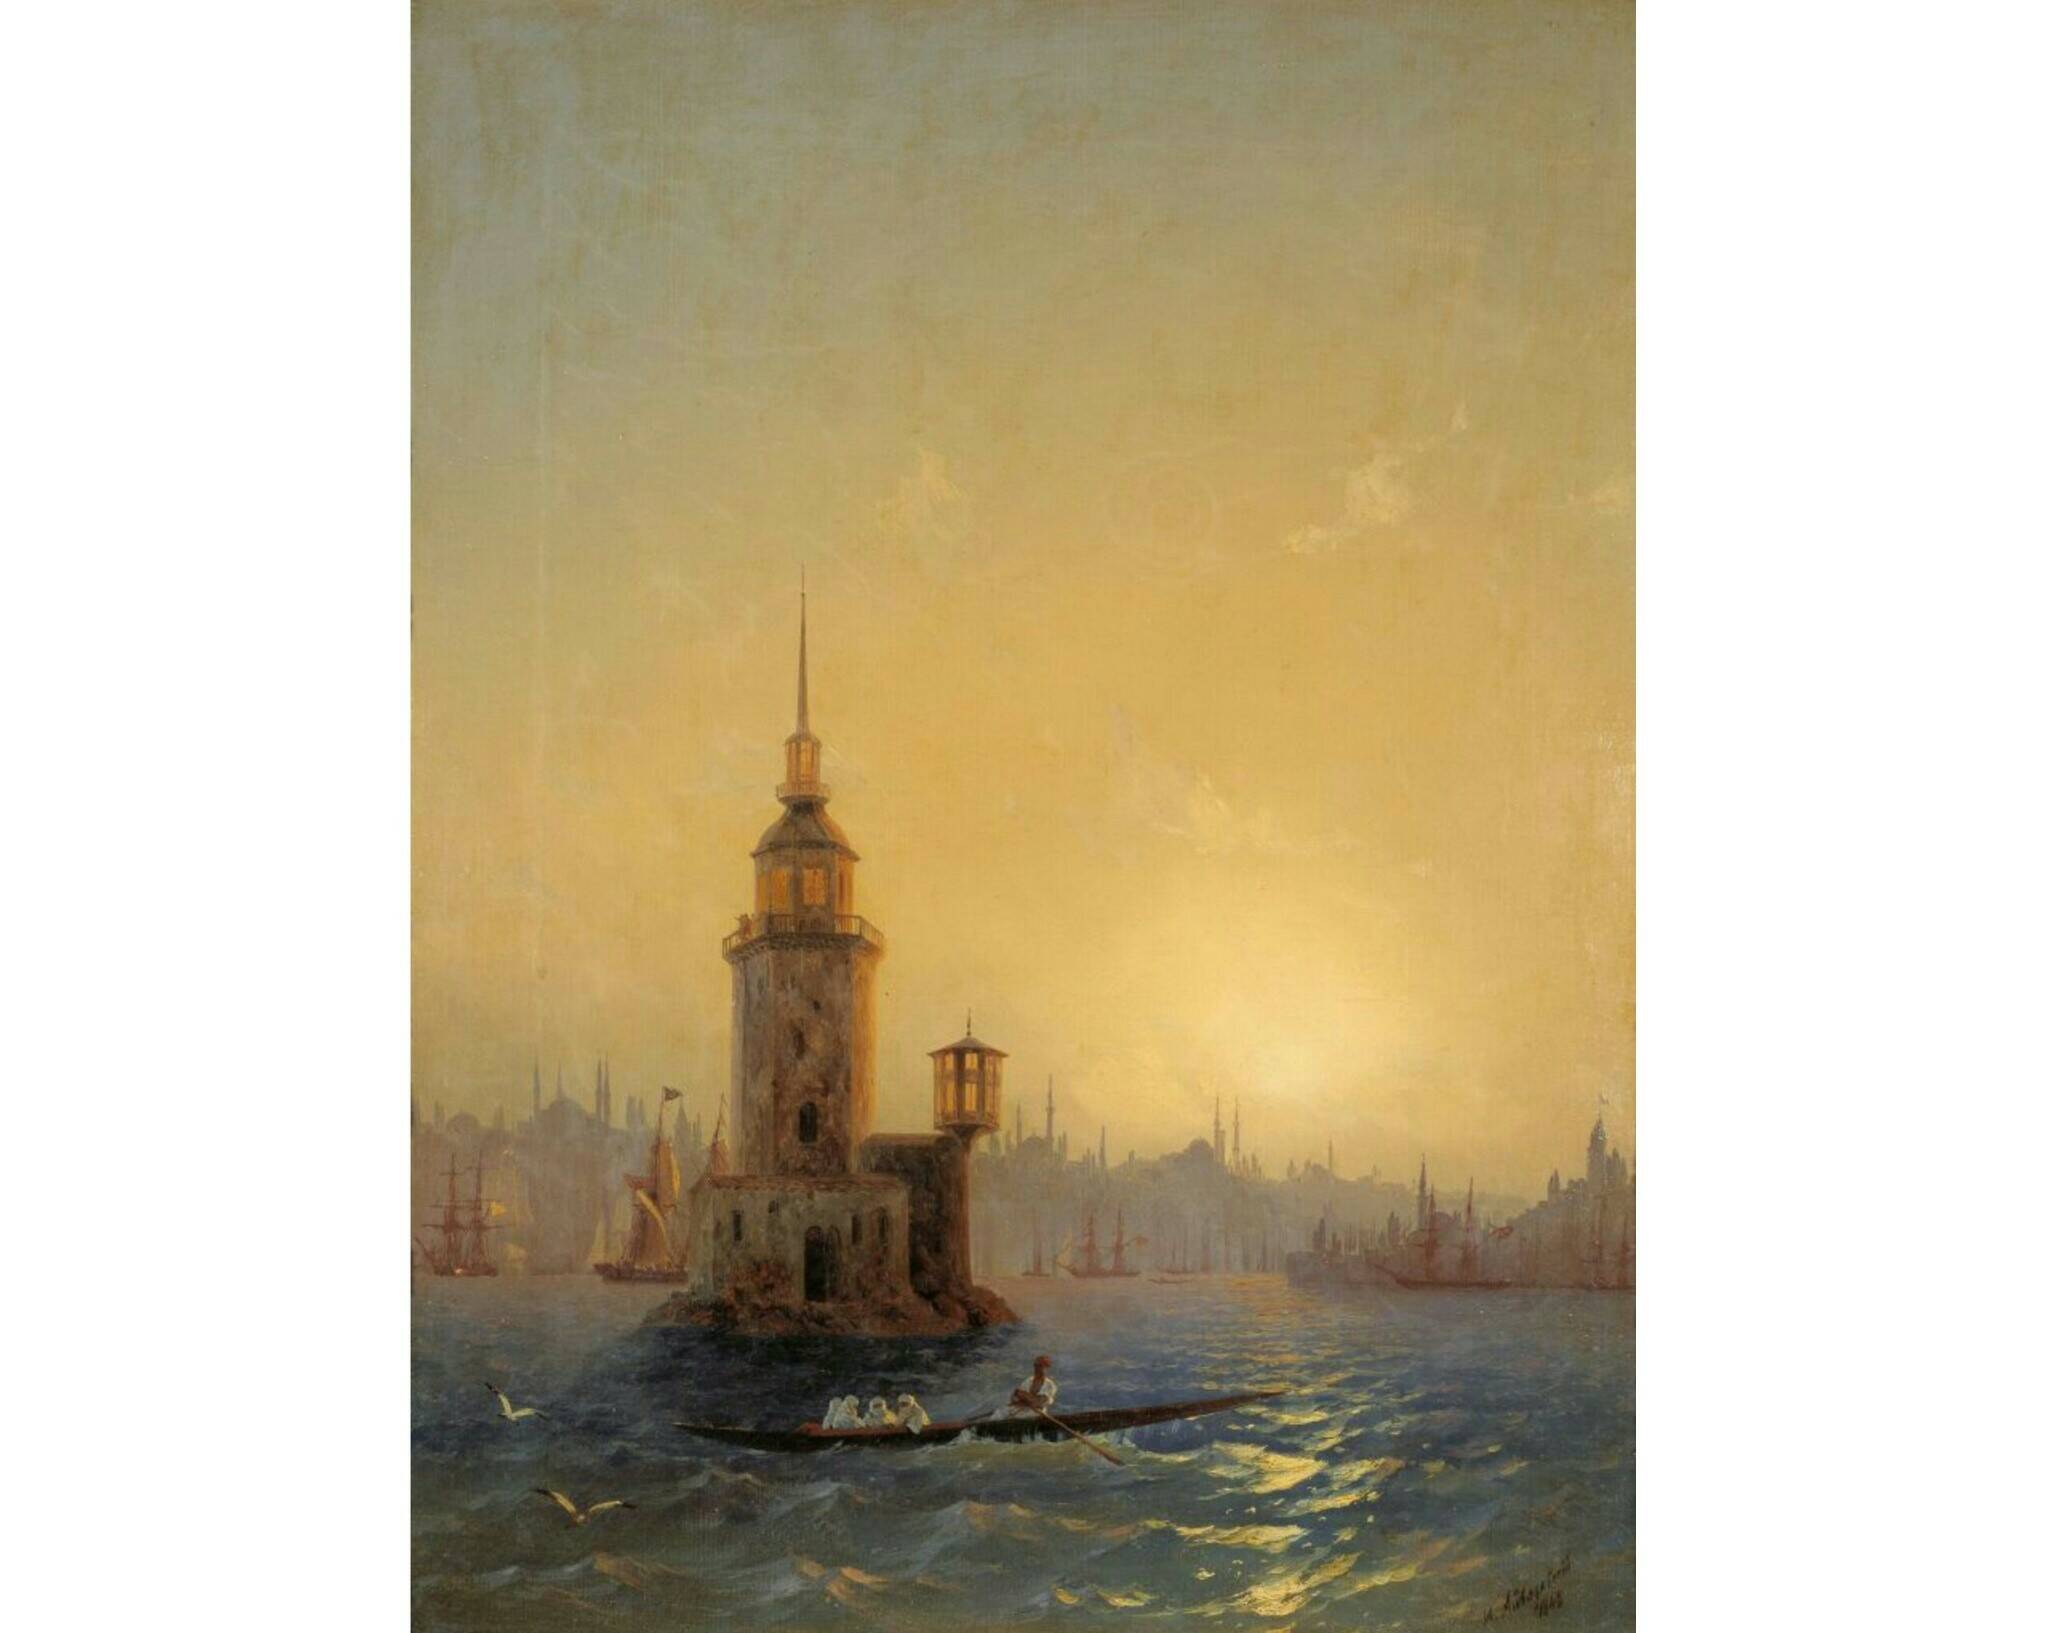  И.К. Айвазовский «Вид Леандровой башни в Константинополе», 1848 год. Из собрания Третьяковской галереи